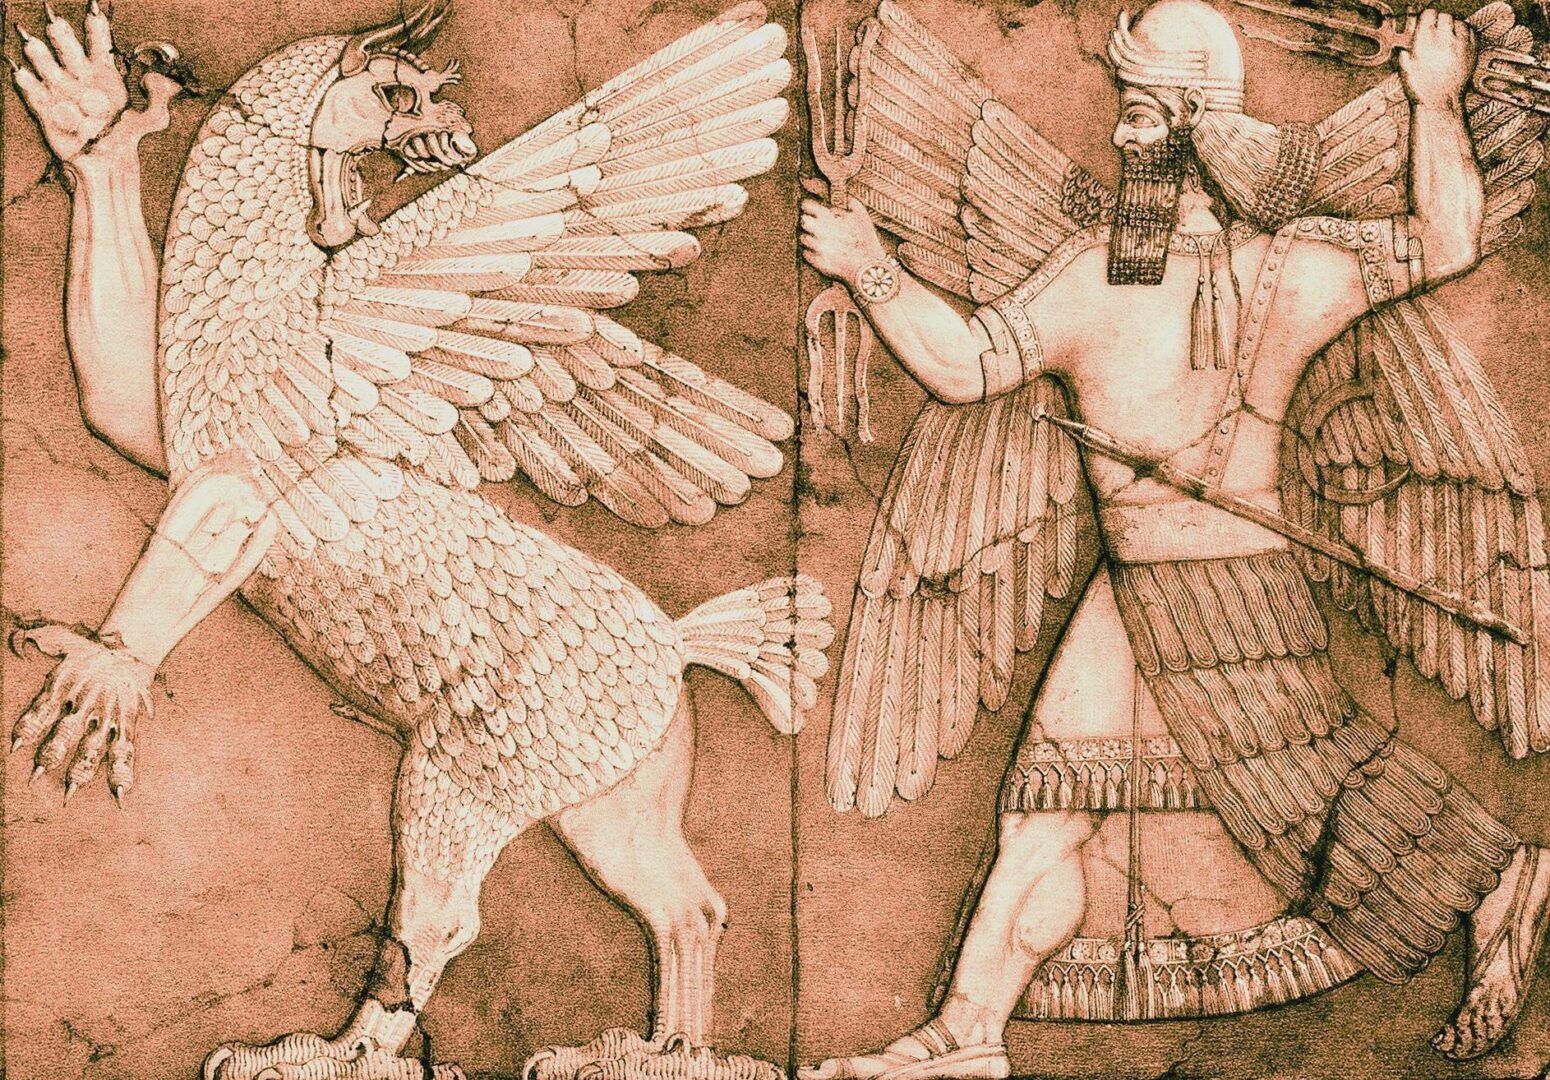 Marduc - história e lendas sobre o deus protetor da Babilônia